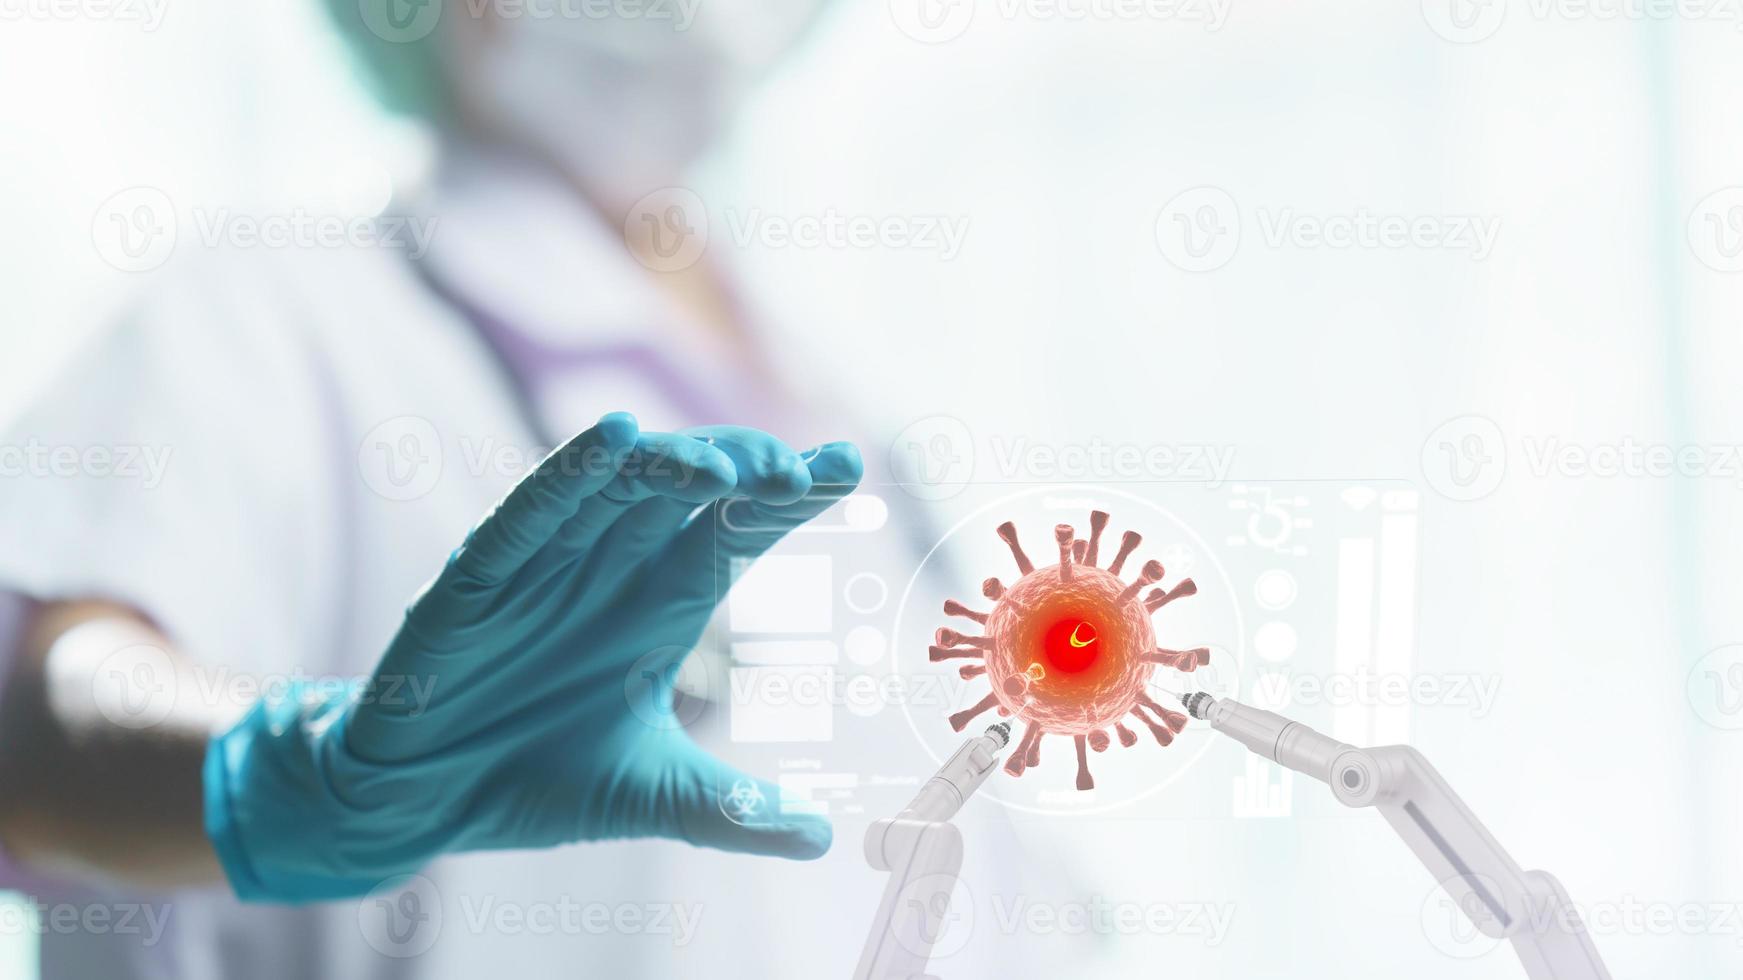 la main du médecin tient un écran de tablette transparent montrant une cellule de virus corona avec un bras robotique. photo